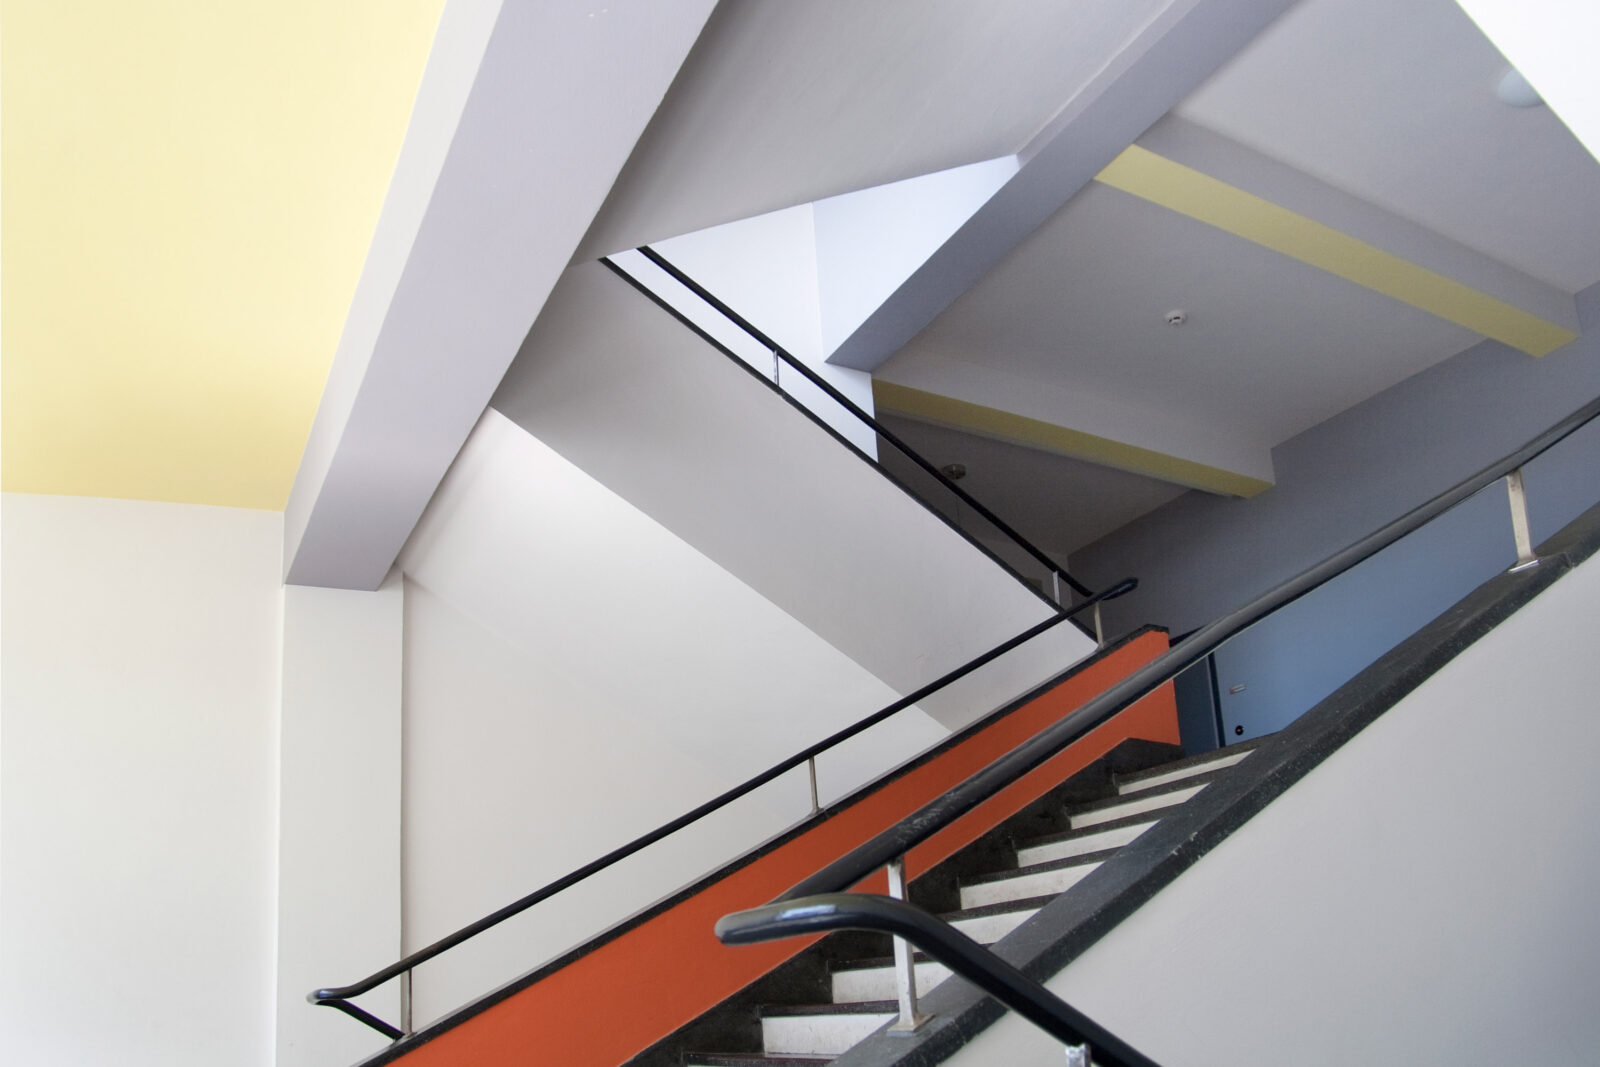 Treppenhaus im Bauhausgebäude. Die Decken und Wände sind in den Farben Gelb, Rot, Graublau und Grau gestrichen.